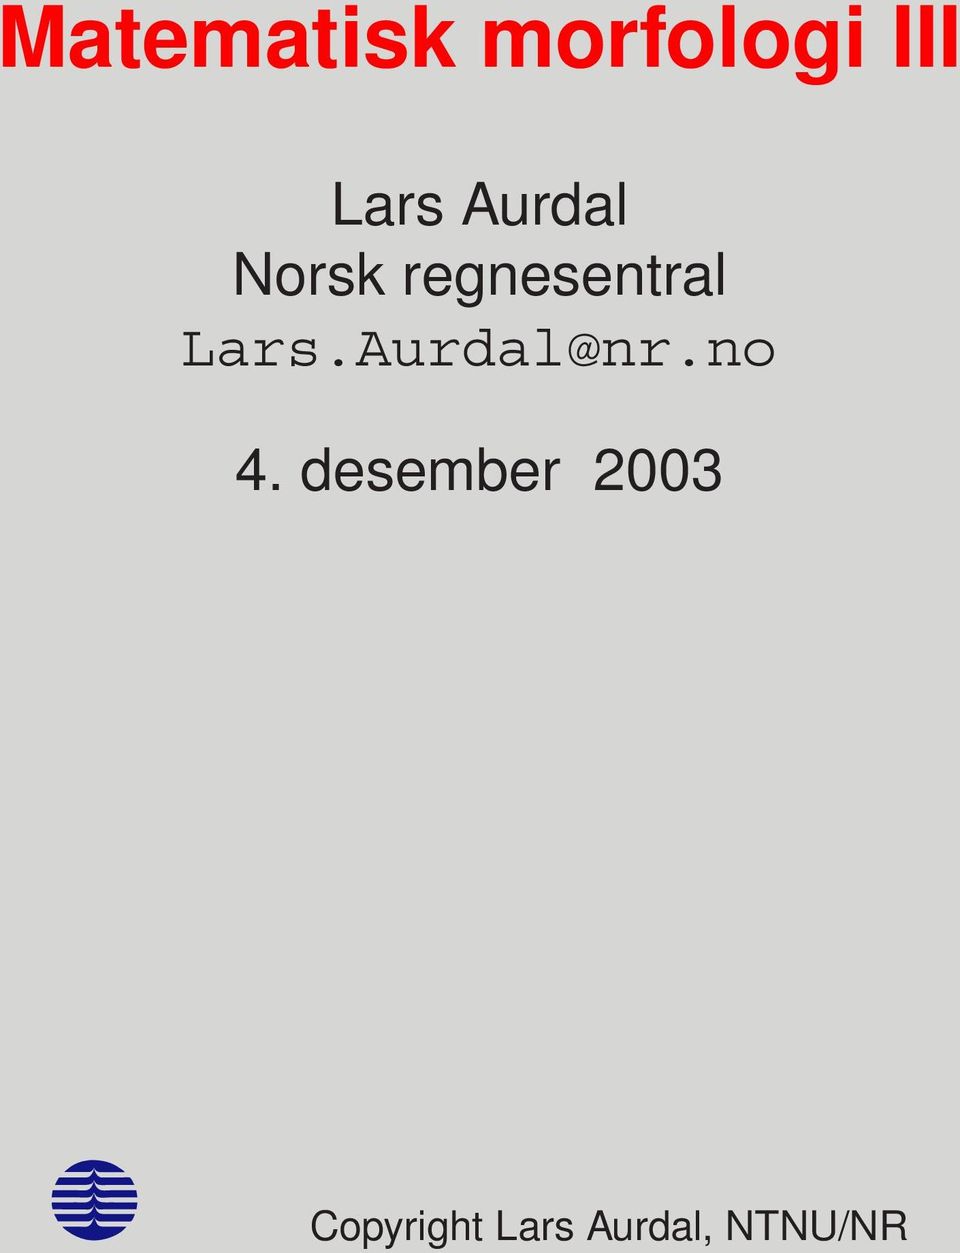 Aurdal@nr.no 4.